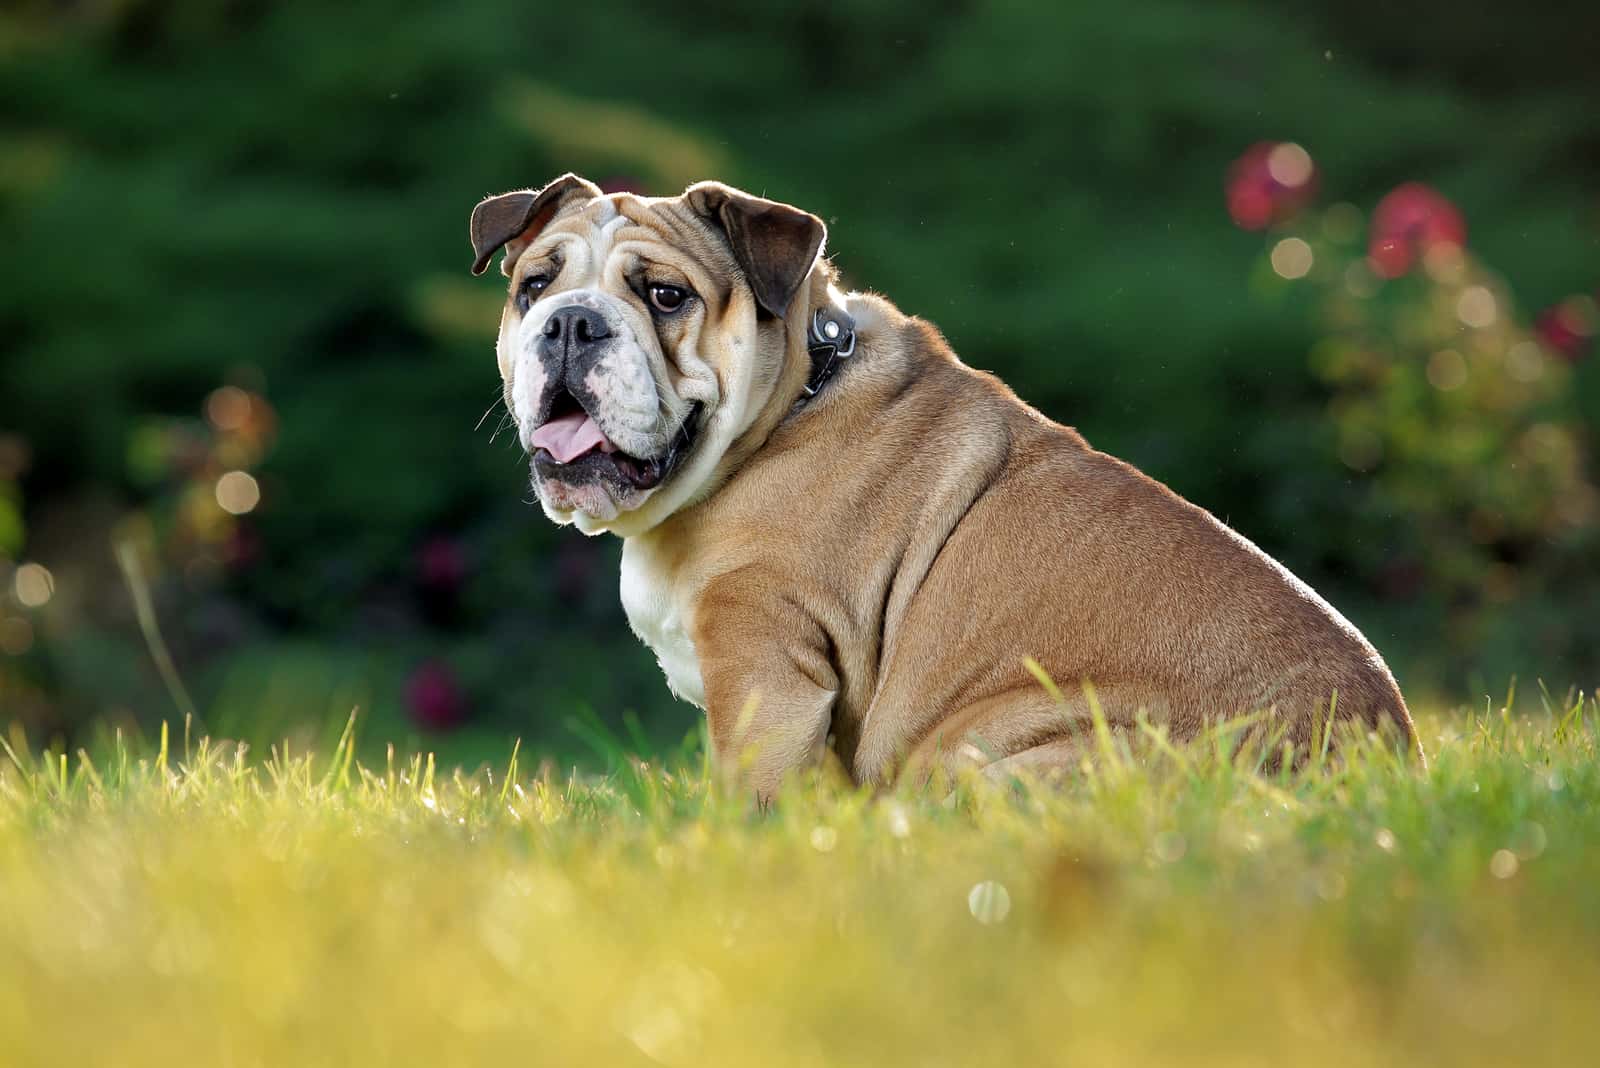 an English bulldog sitting in the grass